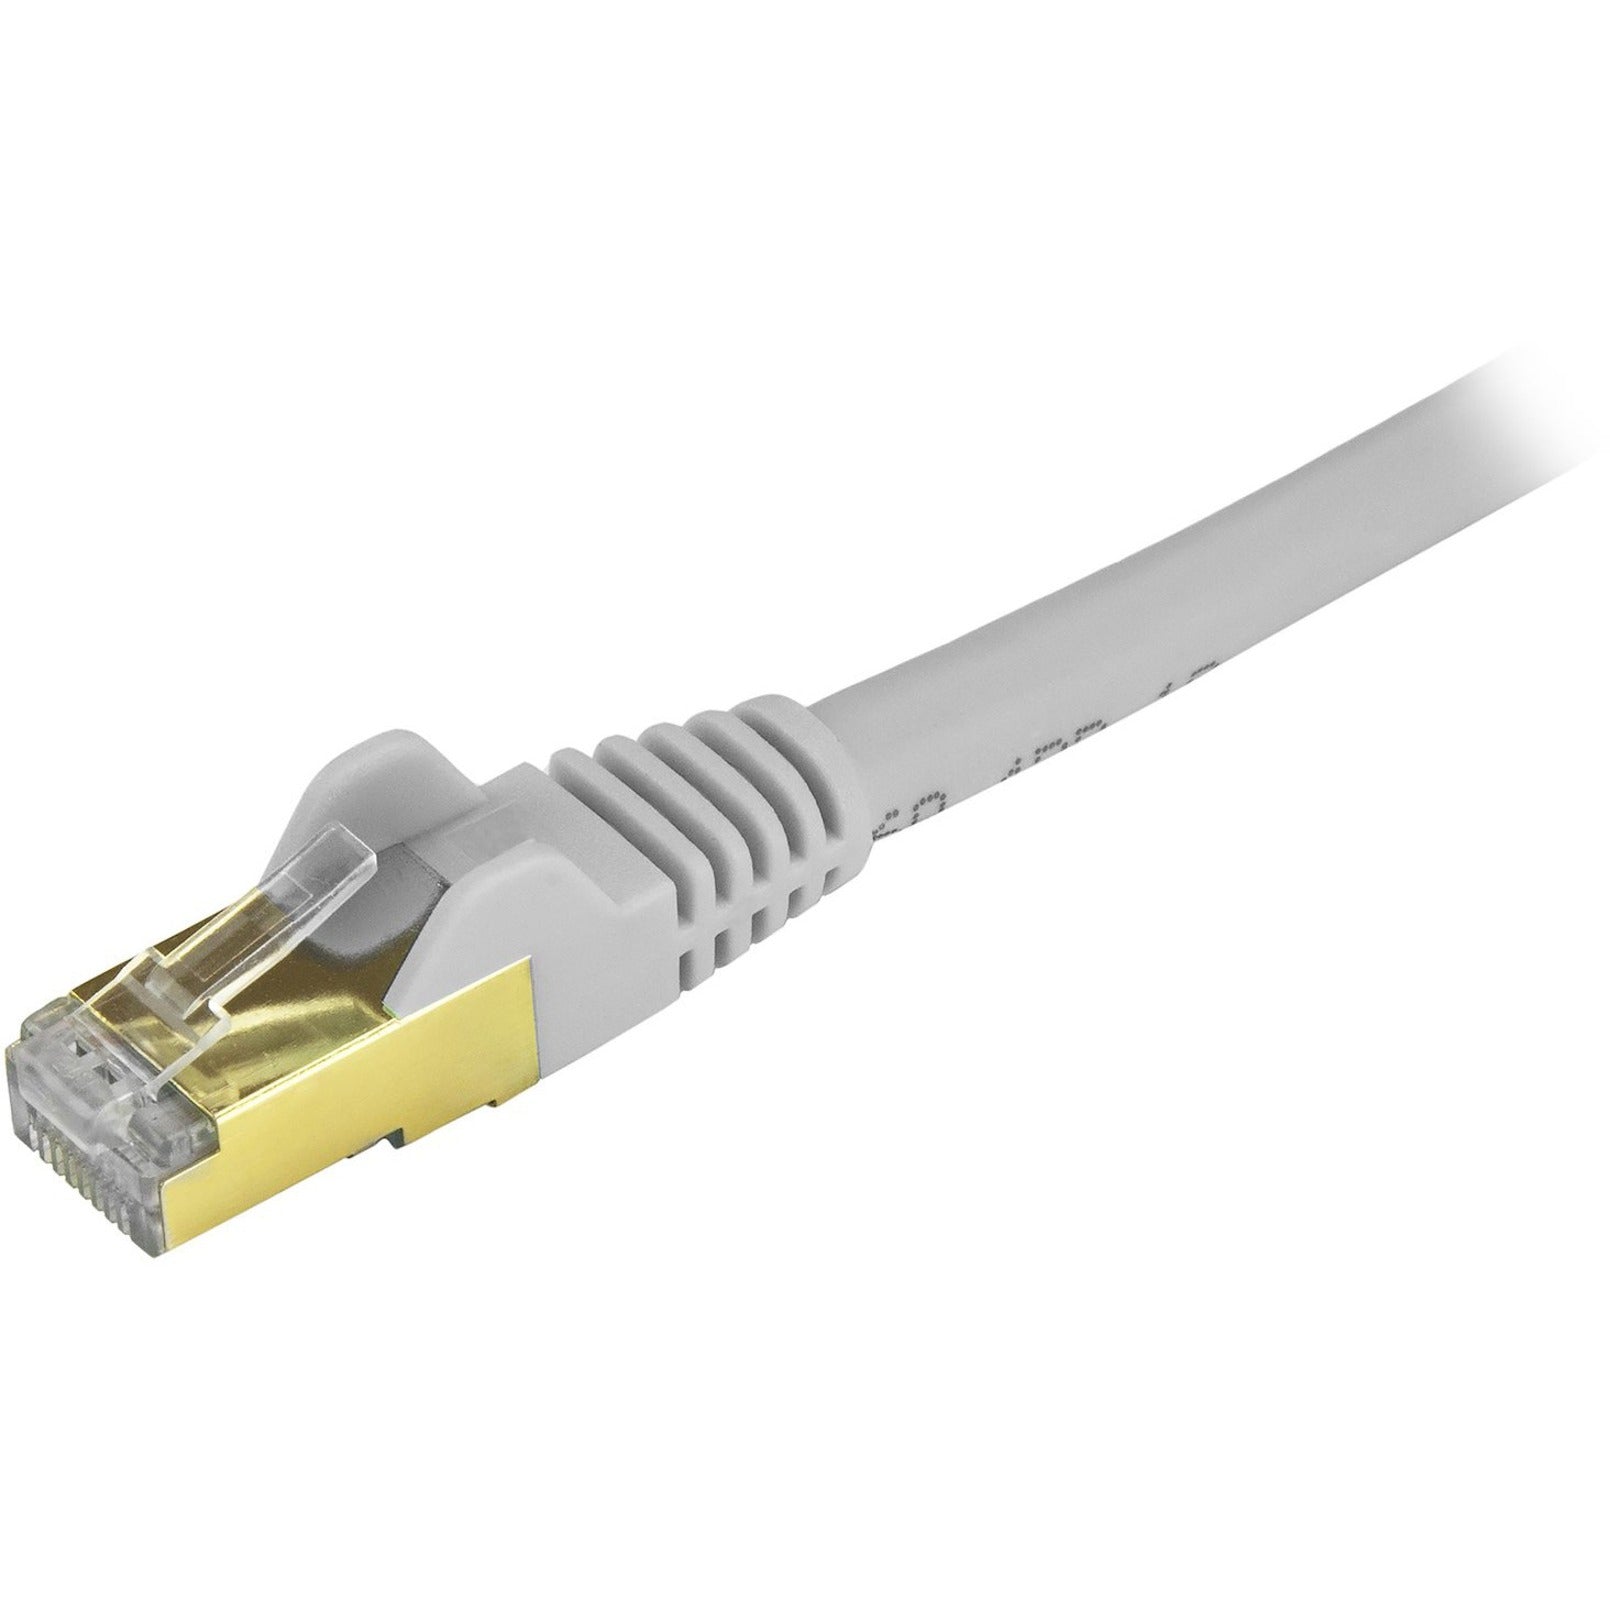 StarTech.com C6ASPAT30GR Cat6a Ethernet Patch Cable - Shielded (STP) - 30 ft., Gray, Long Ethernet Cord